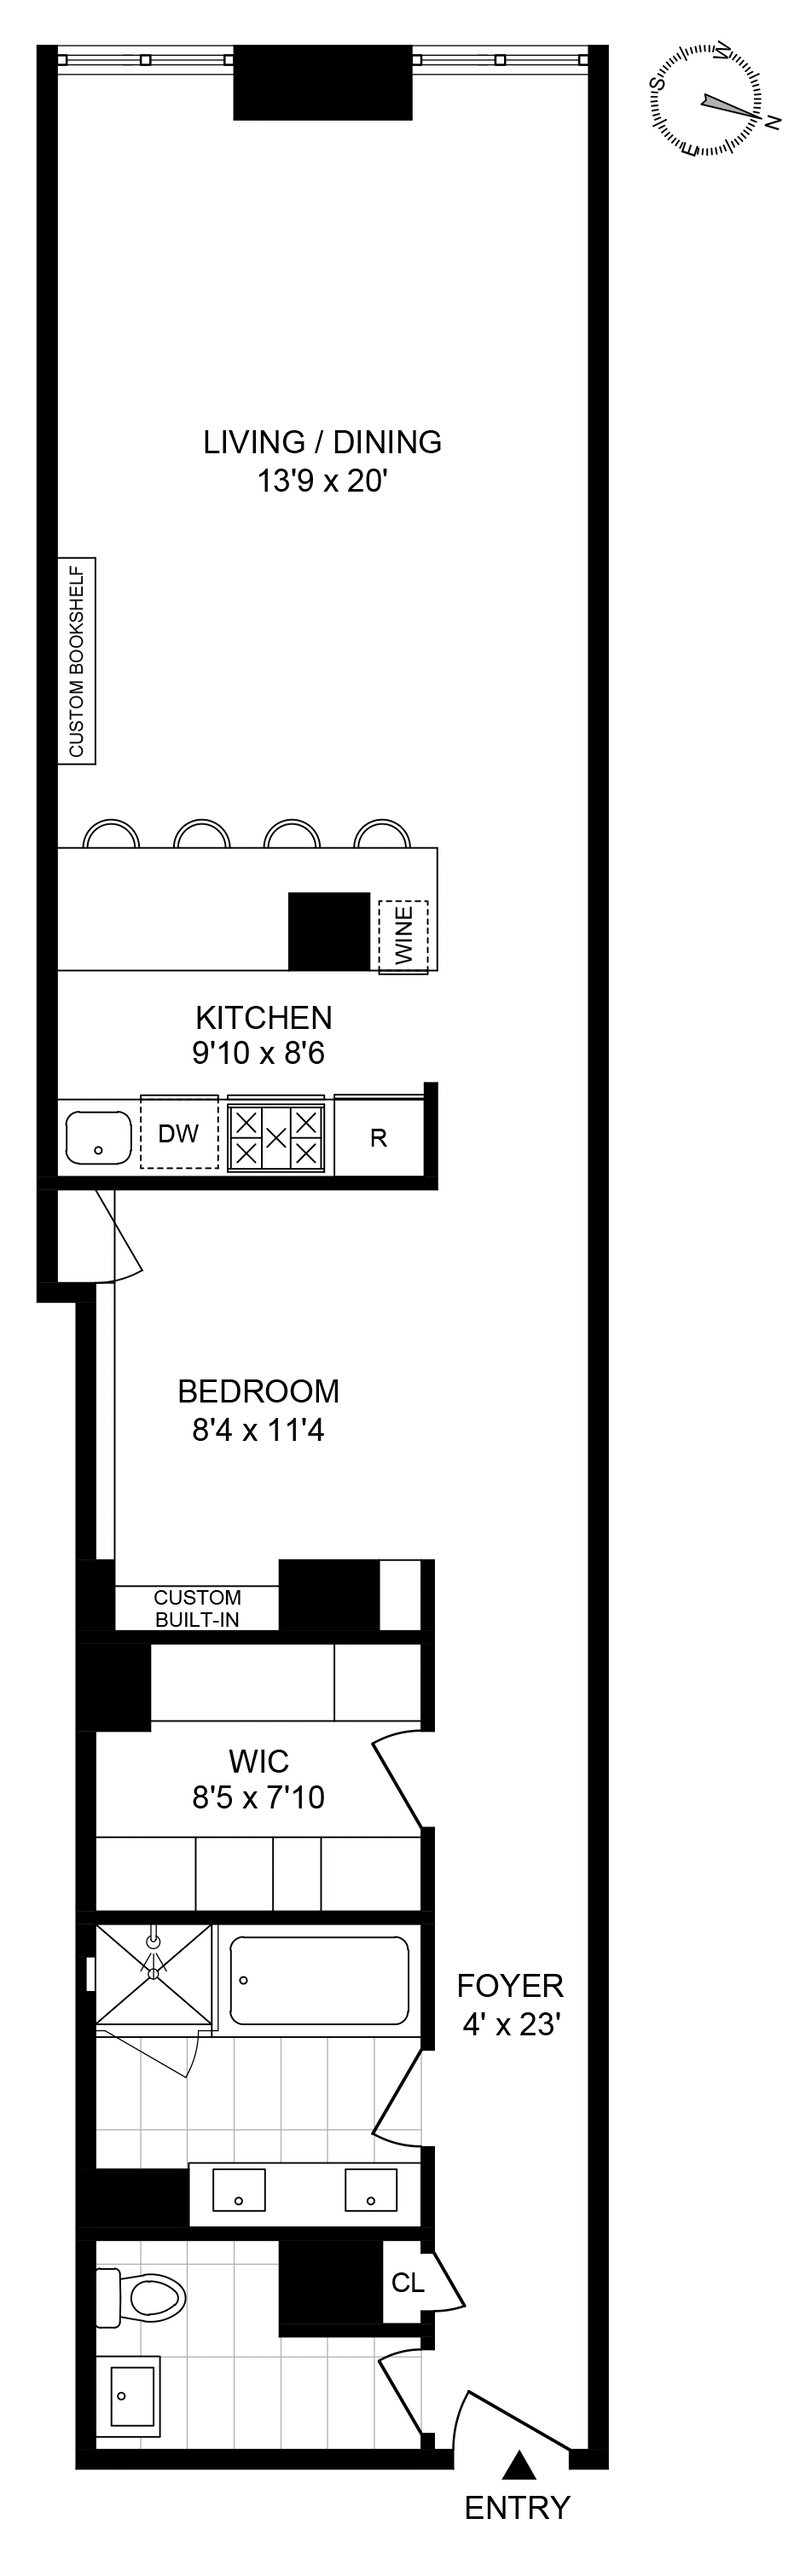 Floorplan for 310 East 46th Street, 4U